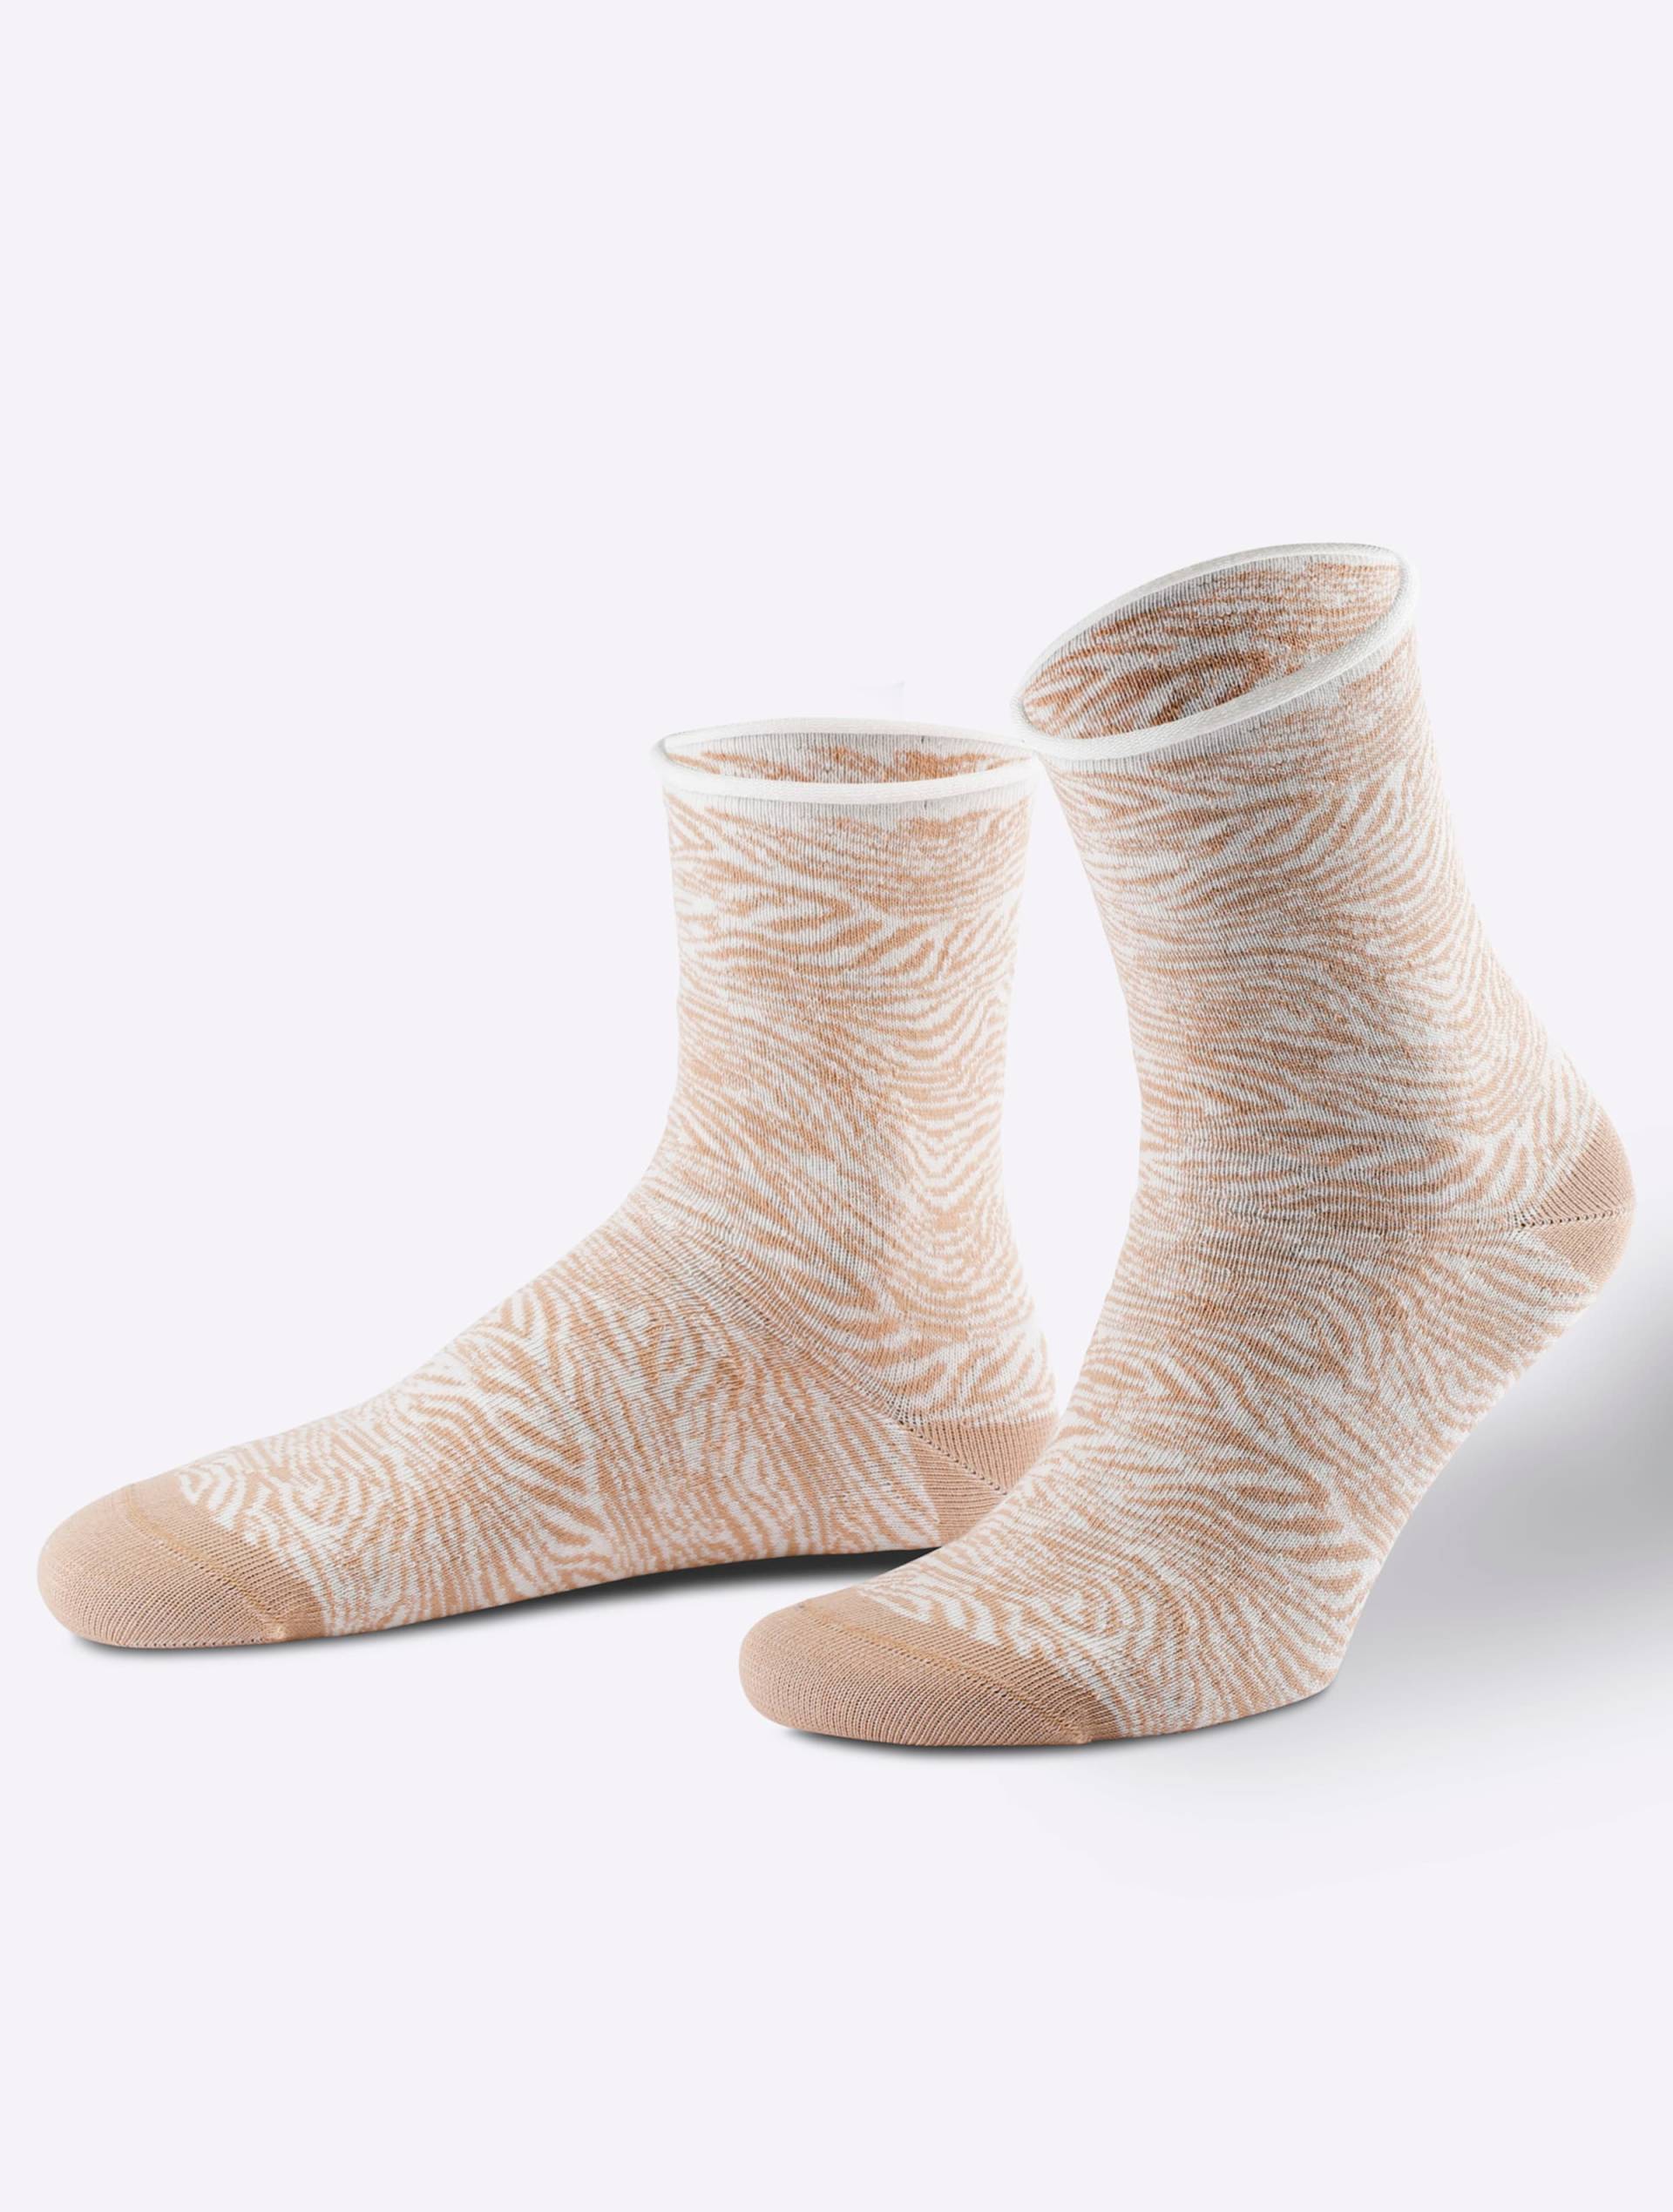 Damen-Socken in camel-gemustert von wäschepur